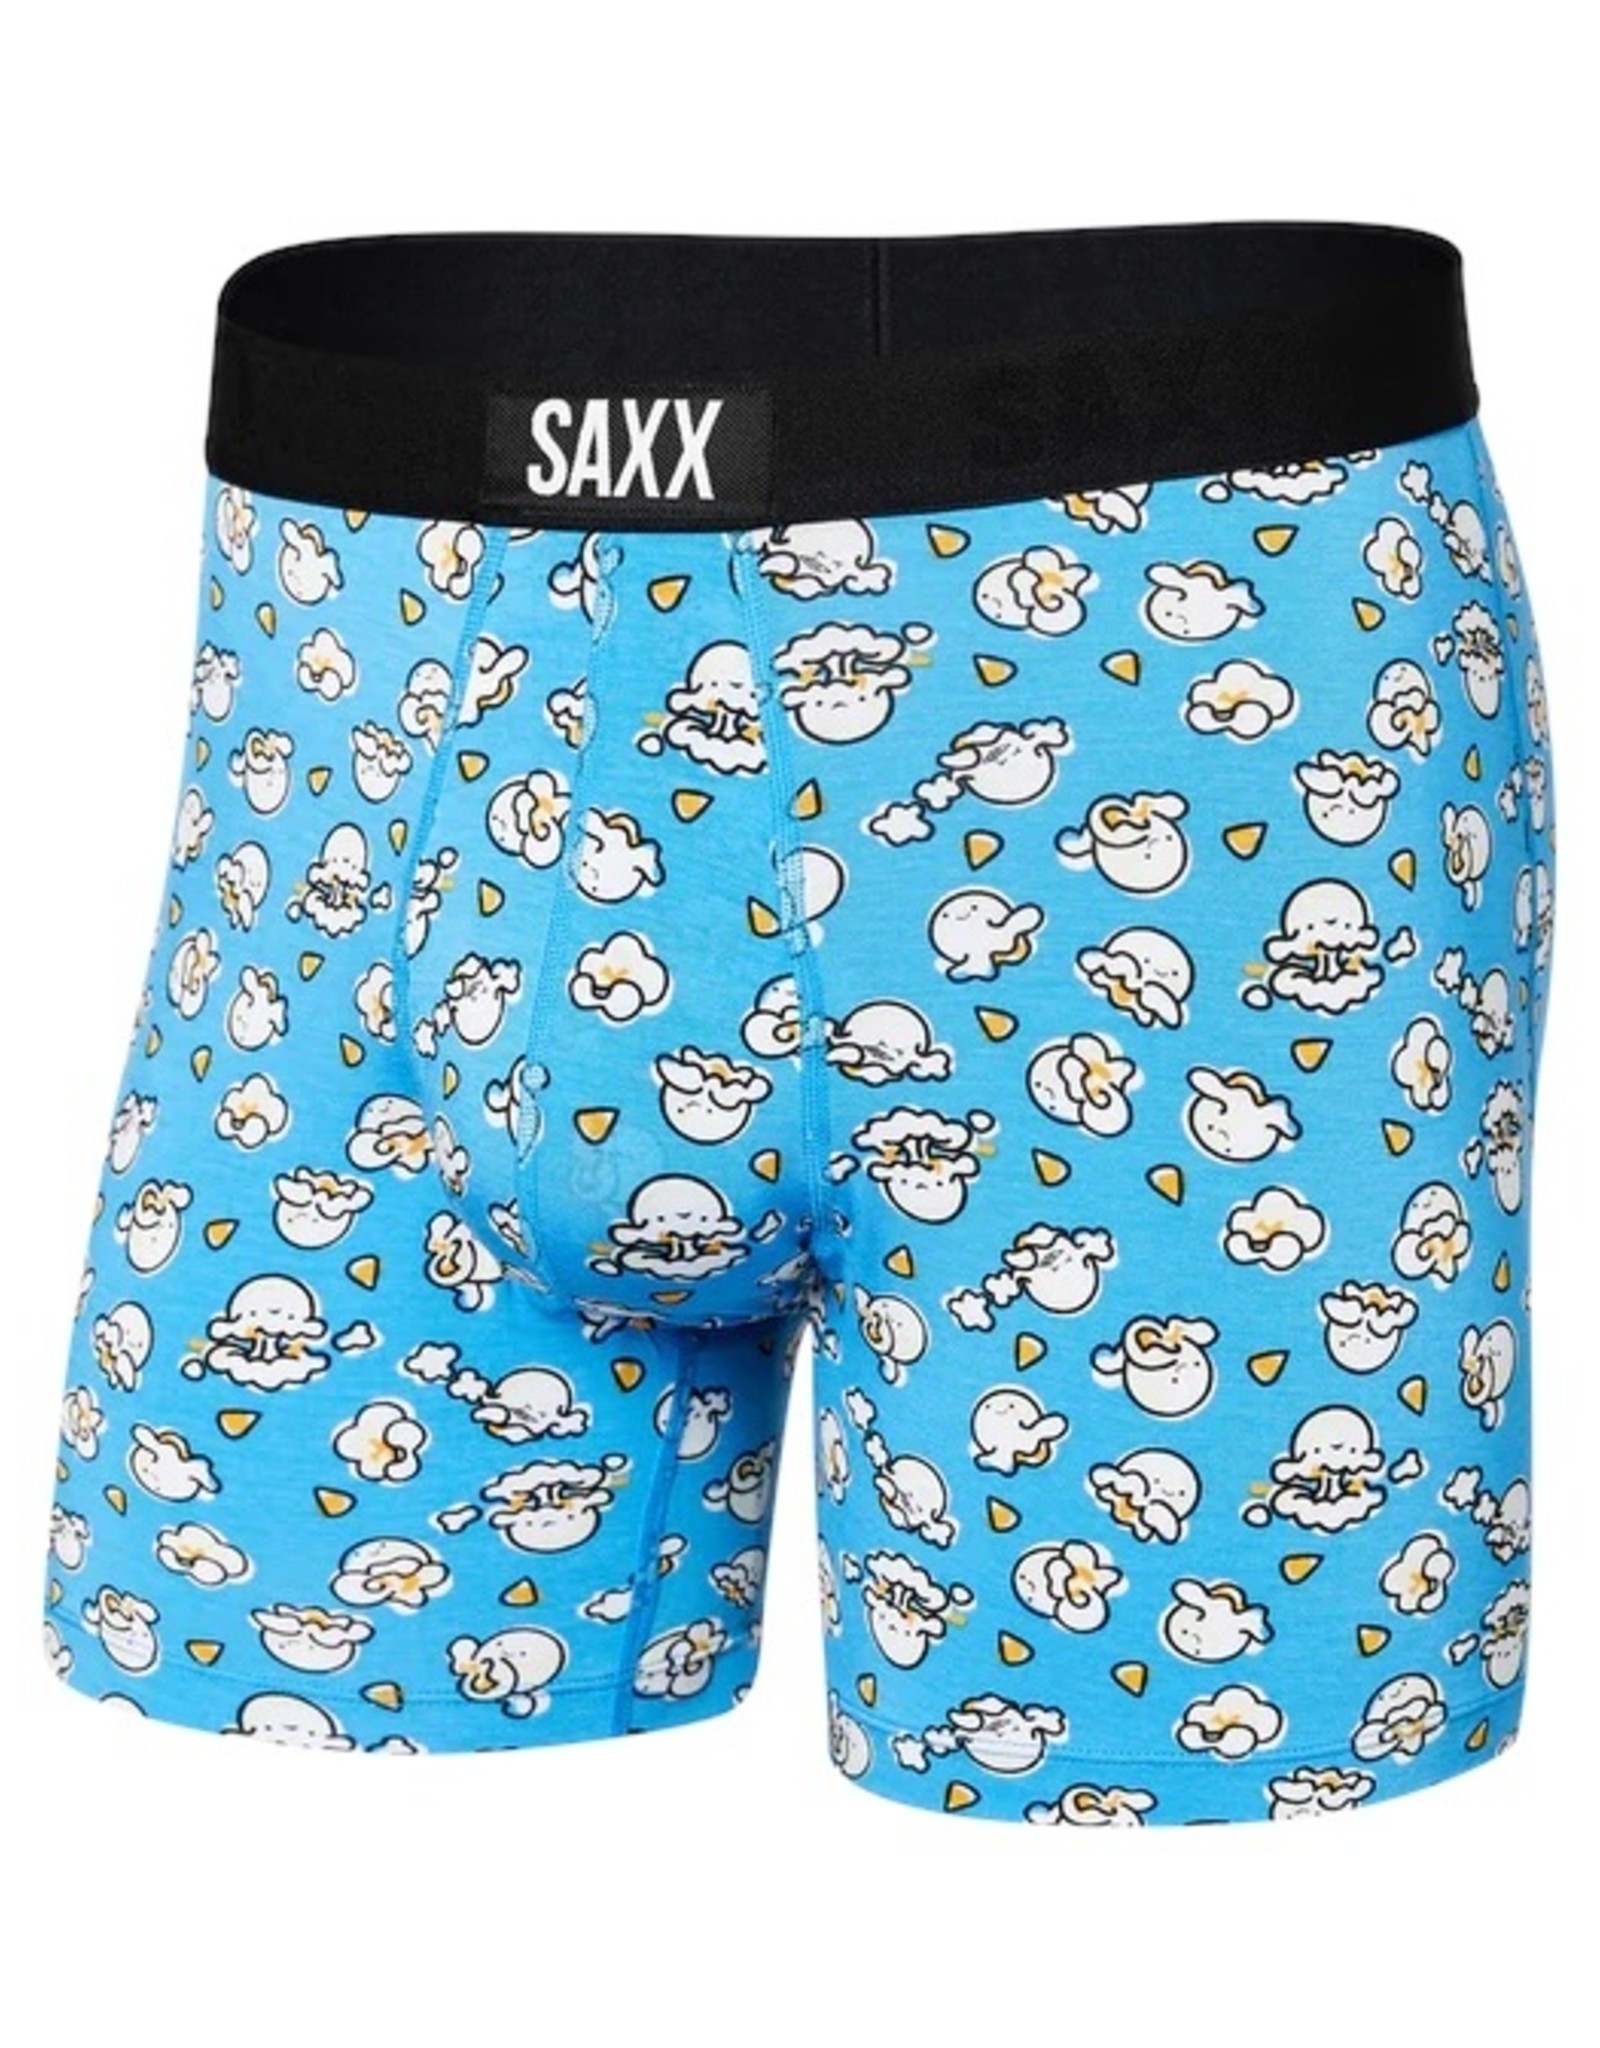 SAXX Underwear Blue Boxer Briefs Mens Size XL 24329 for sale online